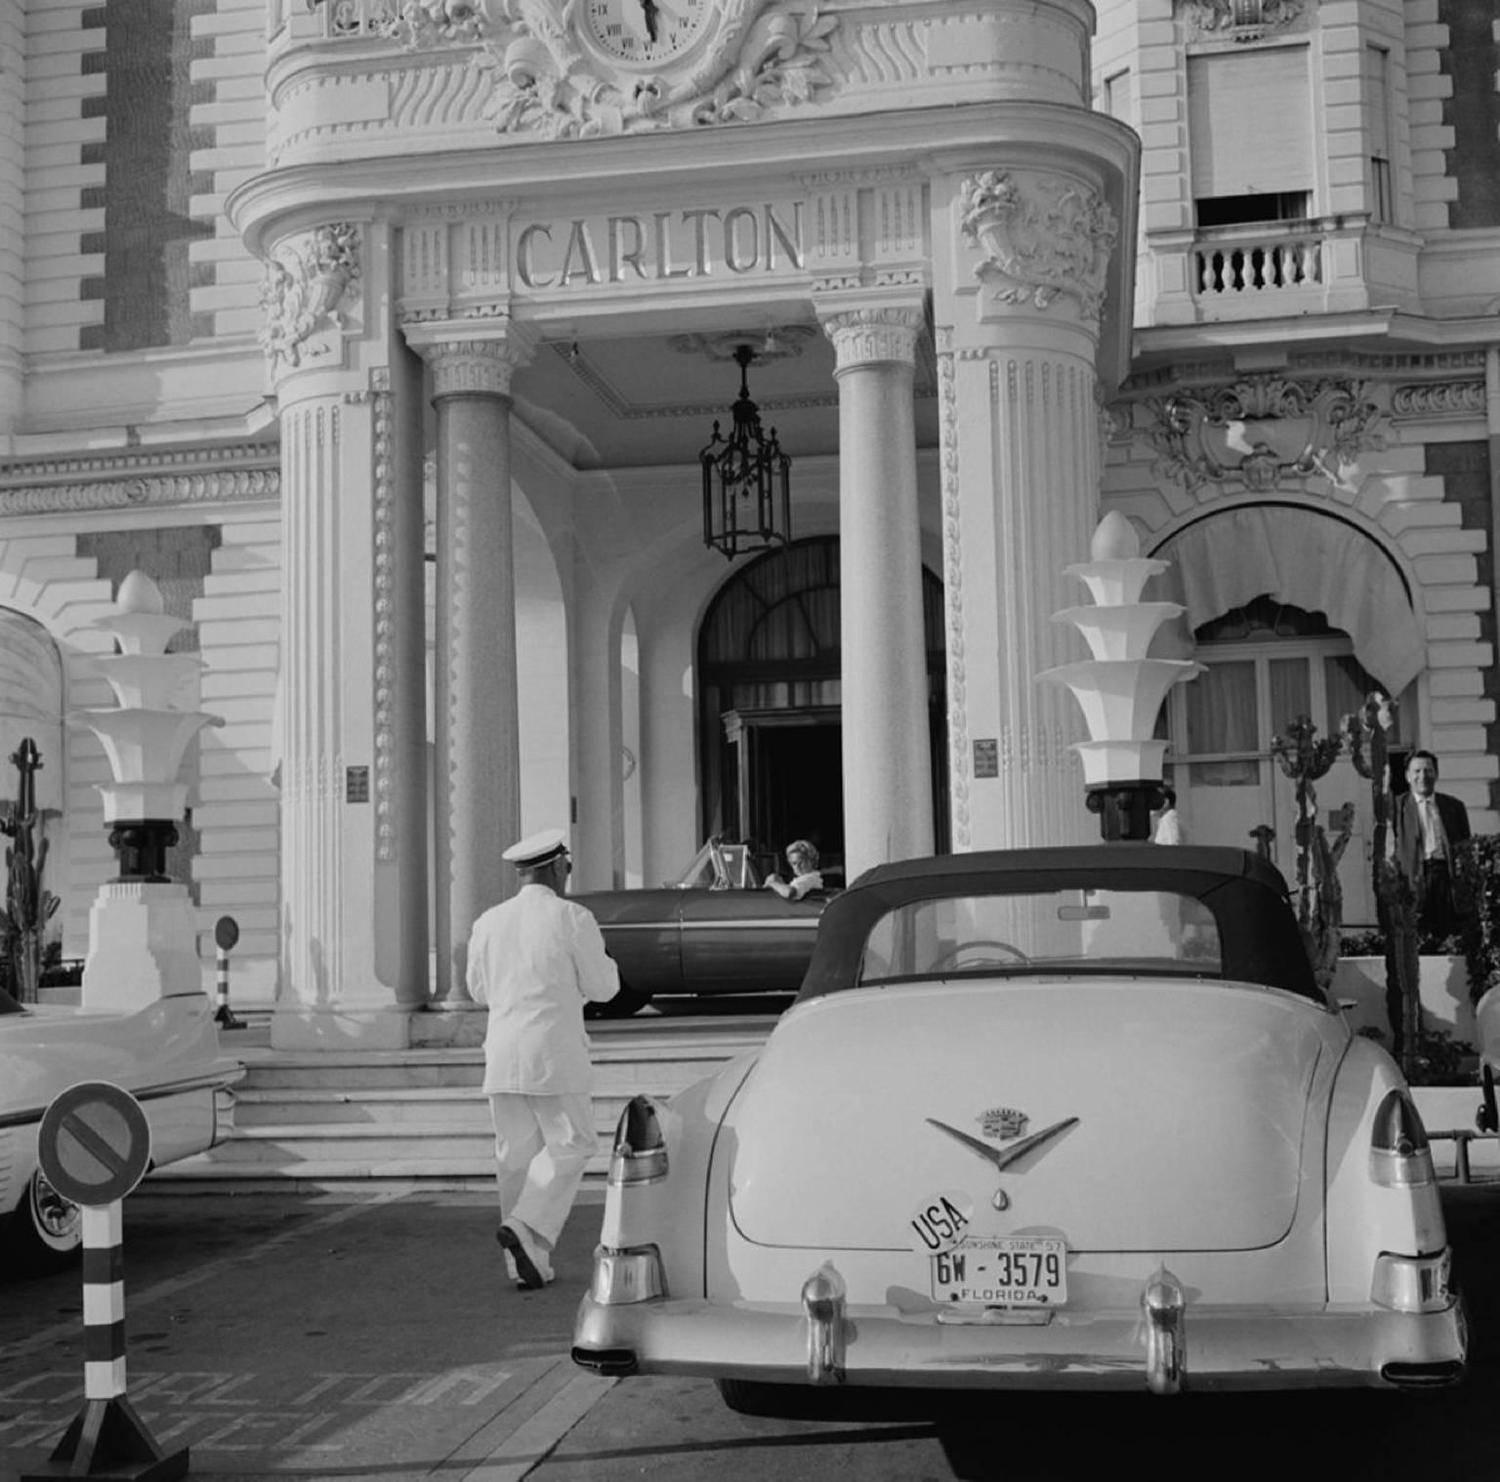 Ein Cadillac mit Florida-Kennzeichen, geparkt vor dem Carlton Hotel, Cannes, Frankreich, um 1955.

Nachlassgestempelte und handnummerierte Auflage von 150 Stück mit Echtheitszertifikat des Nachlasses.   

Slim Aarons (1916-2006) arbeitete